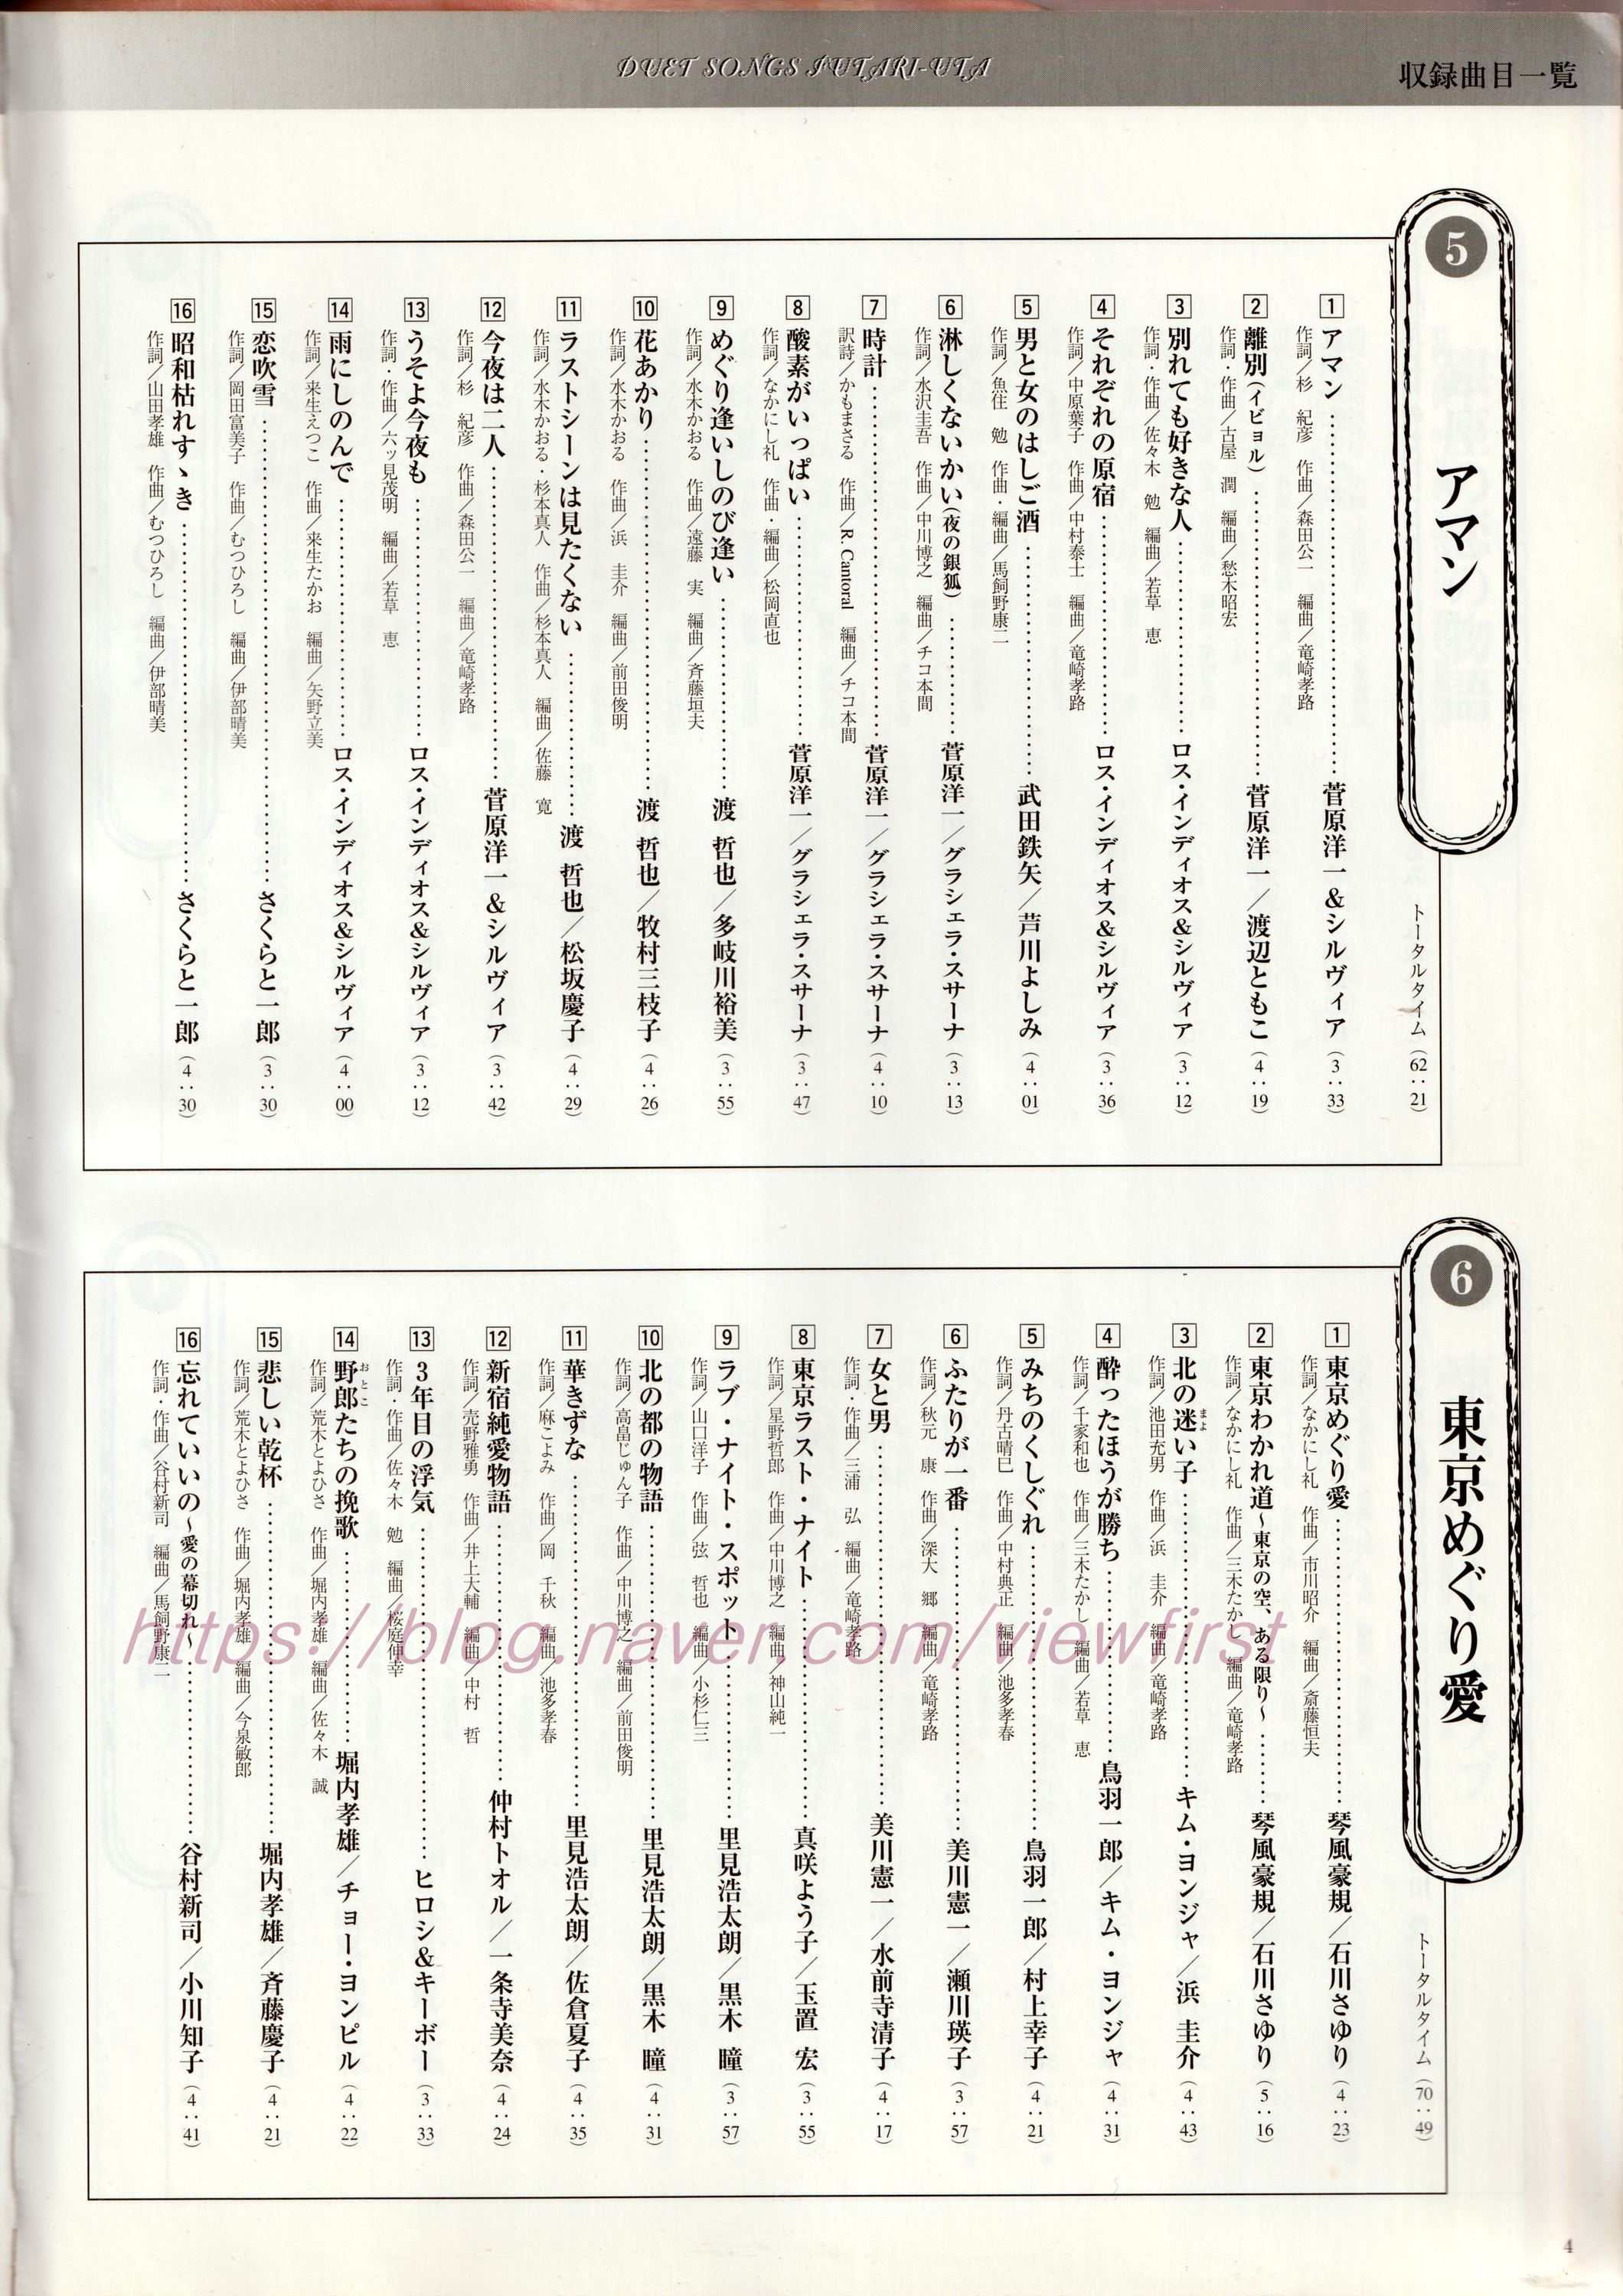 songbook (5).jpg